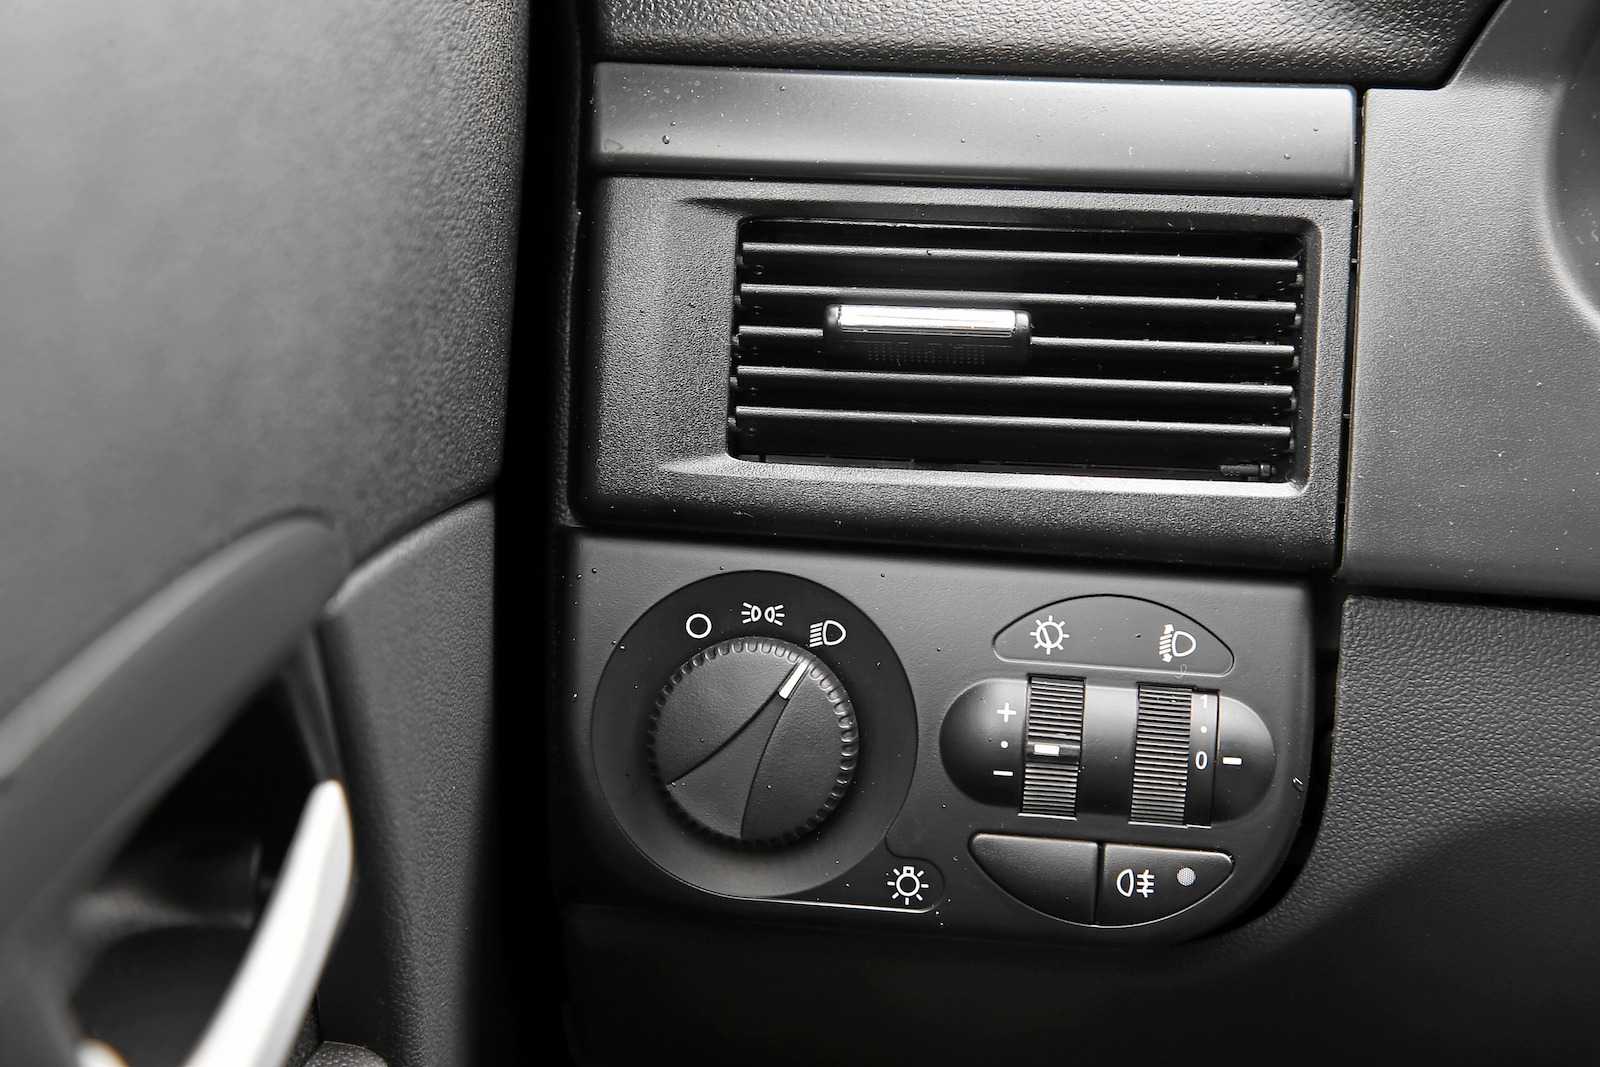 Обзор автомобиля Лада Приора седан (2014-2015). Технические характеристики, фото и цены новой Lada Priora 2 (ВАЗ 2170).